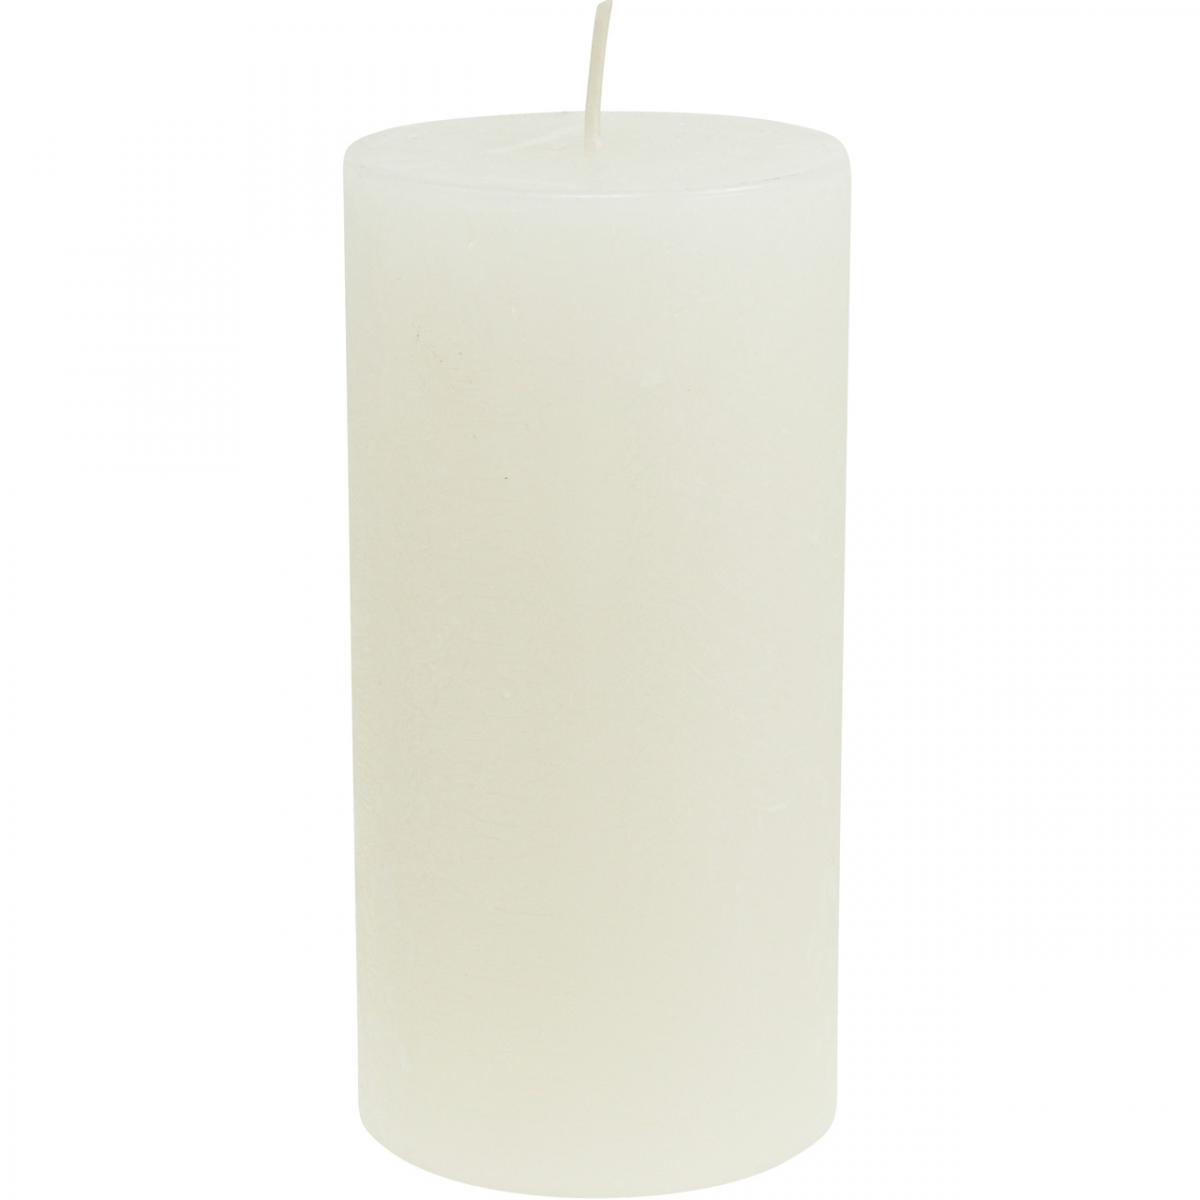 4 pezzi safe candle® Candela autoestinguente RUSTIC Sahara altezza 8 cm / Ø 6 cm tempo di combustione 25 ore 